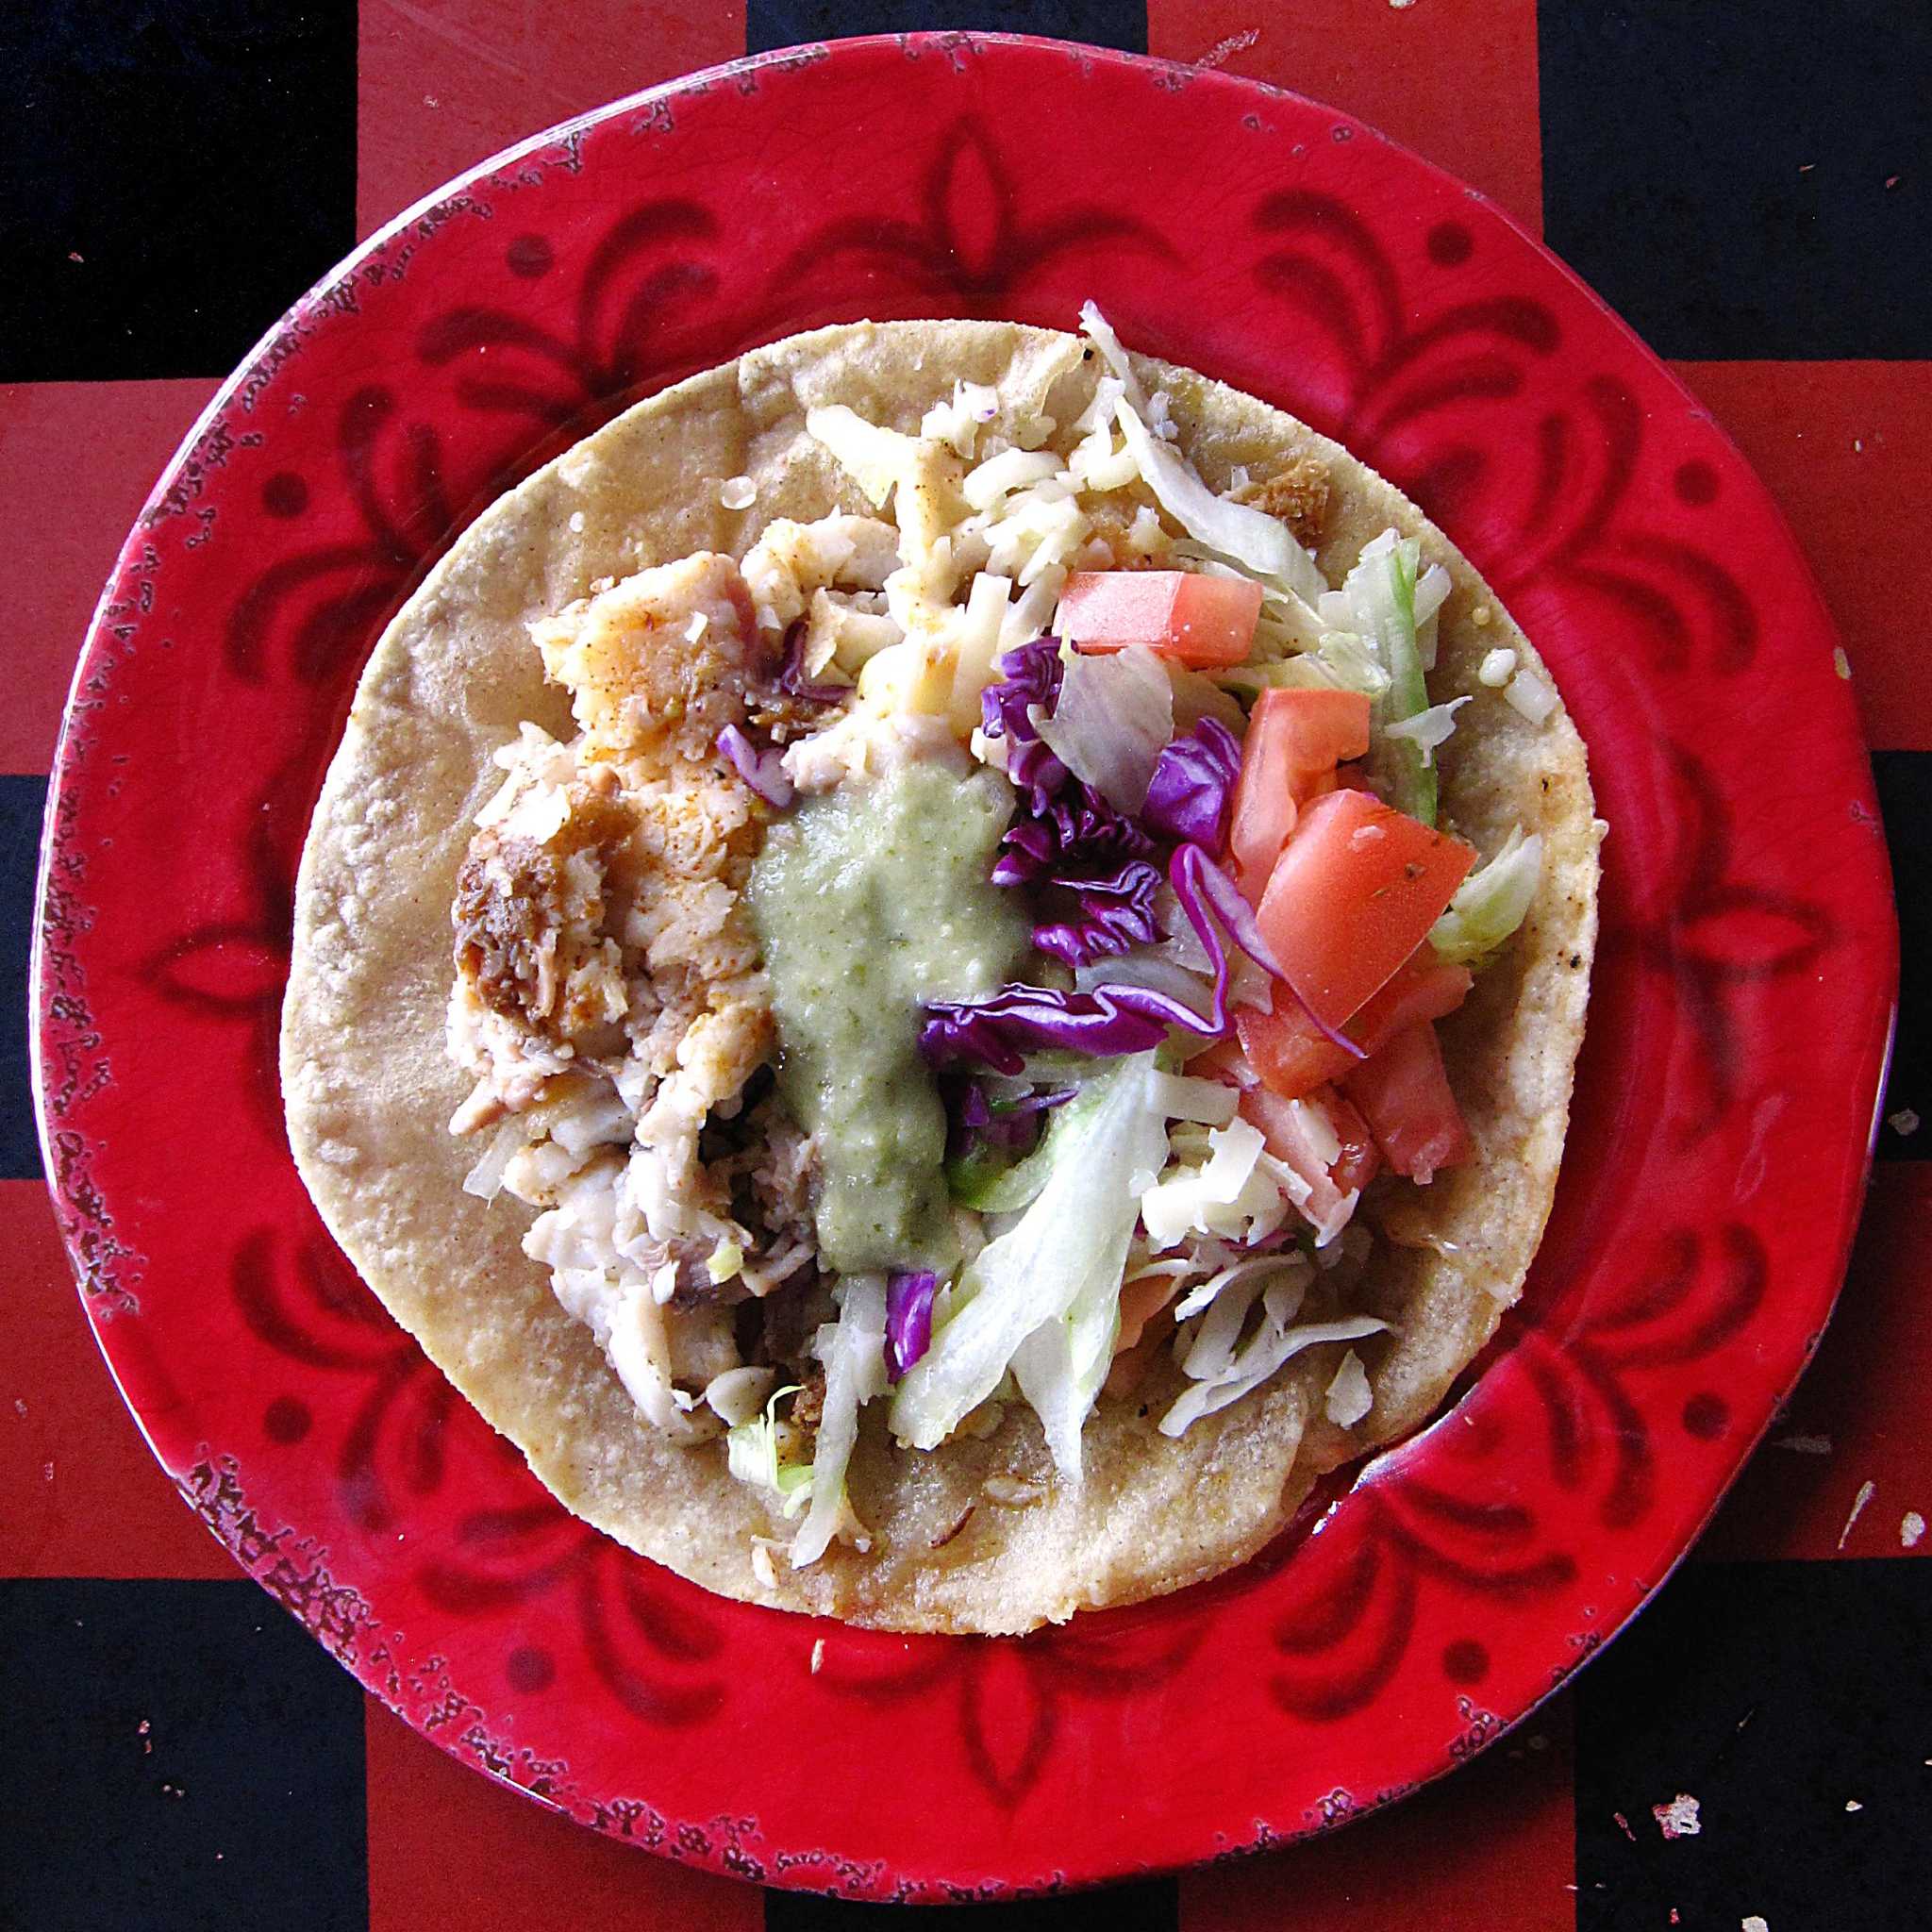 Los Mex - Cocina Mexicana, SAO JOSE DOS CAMPOS